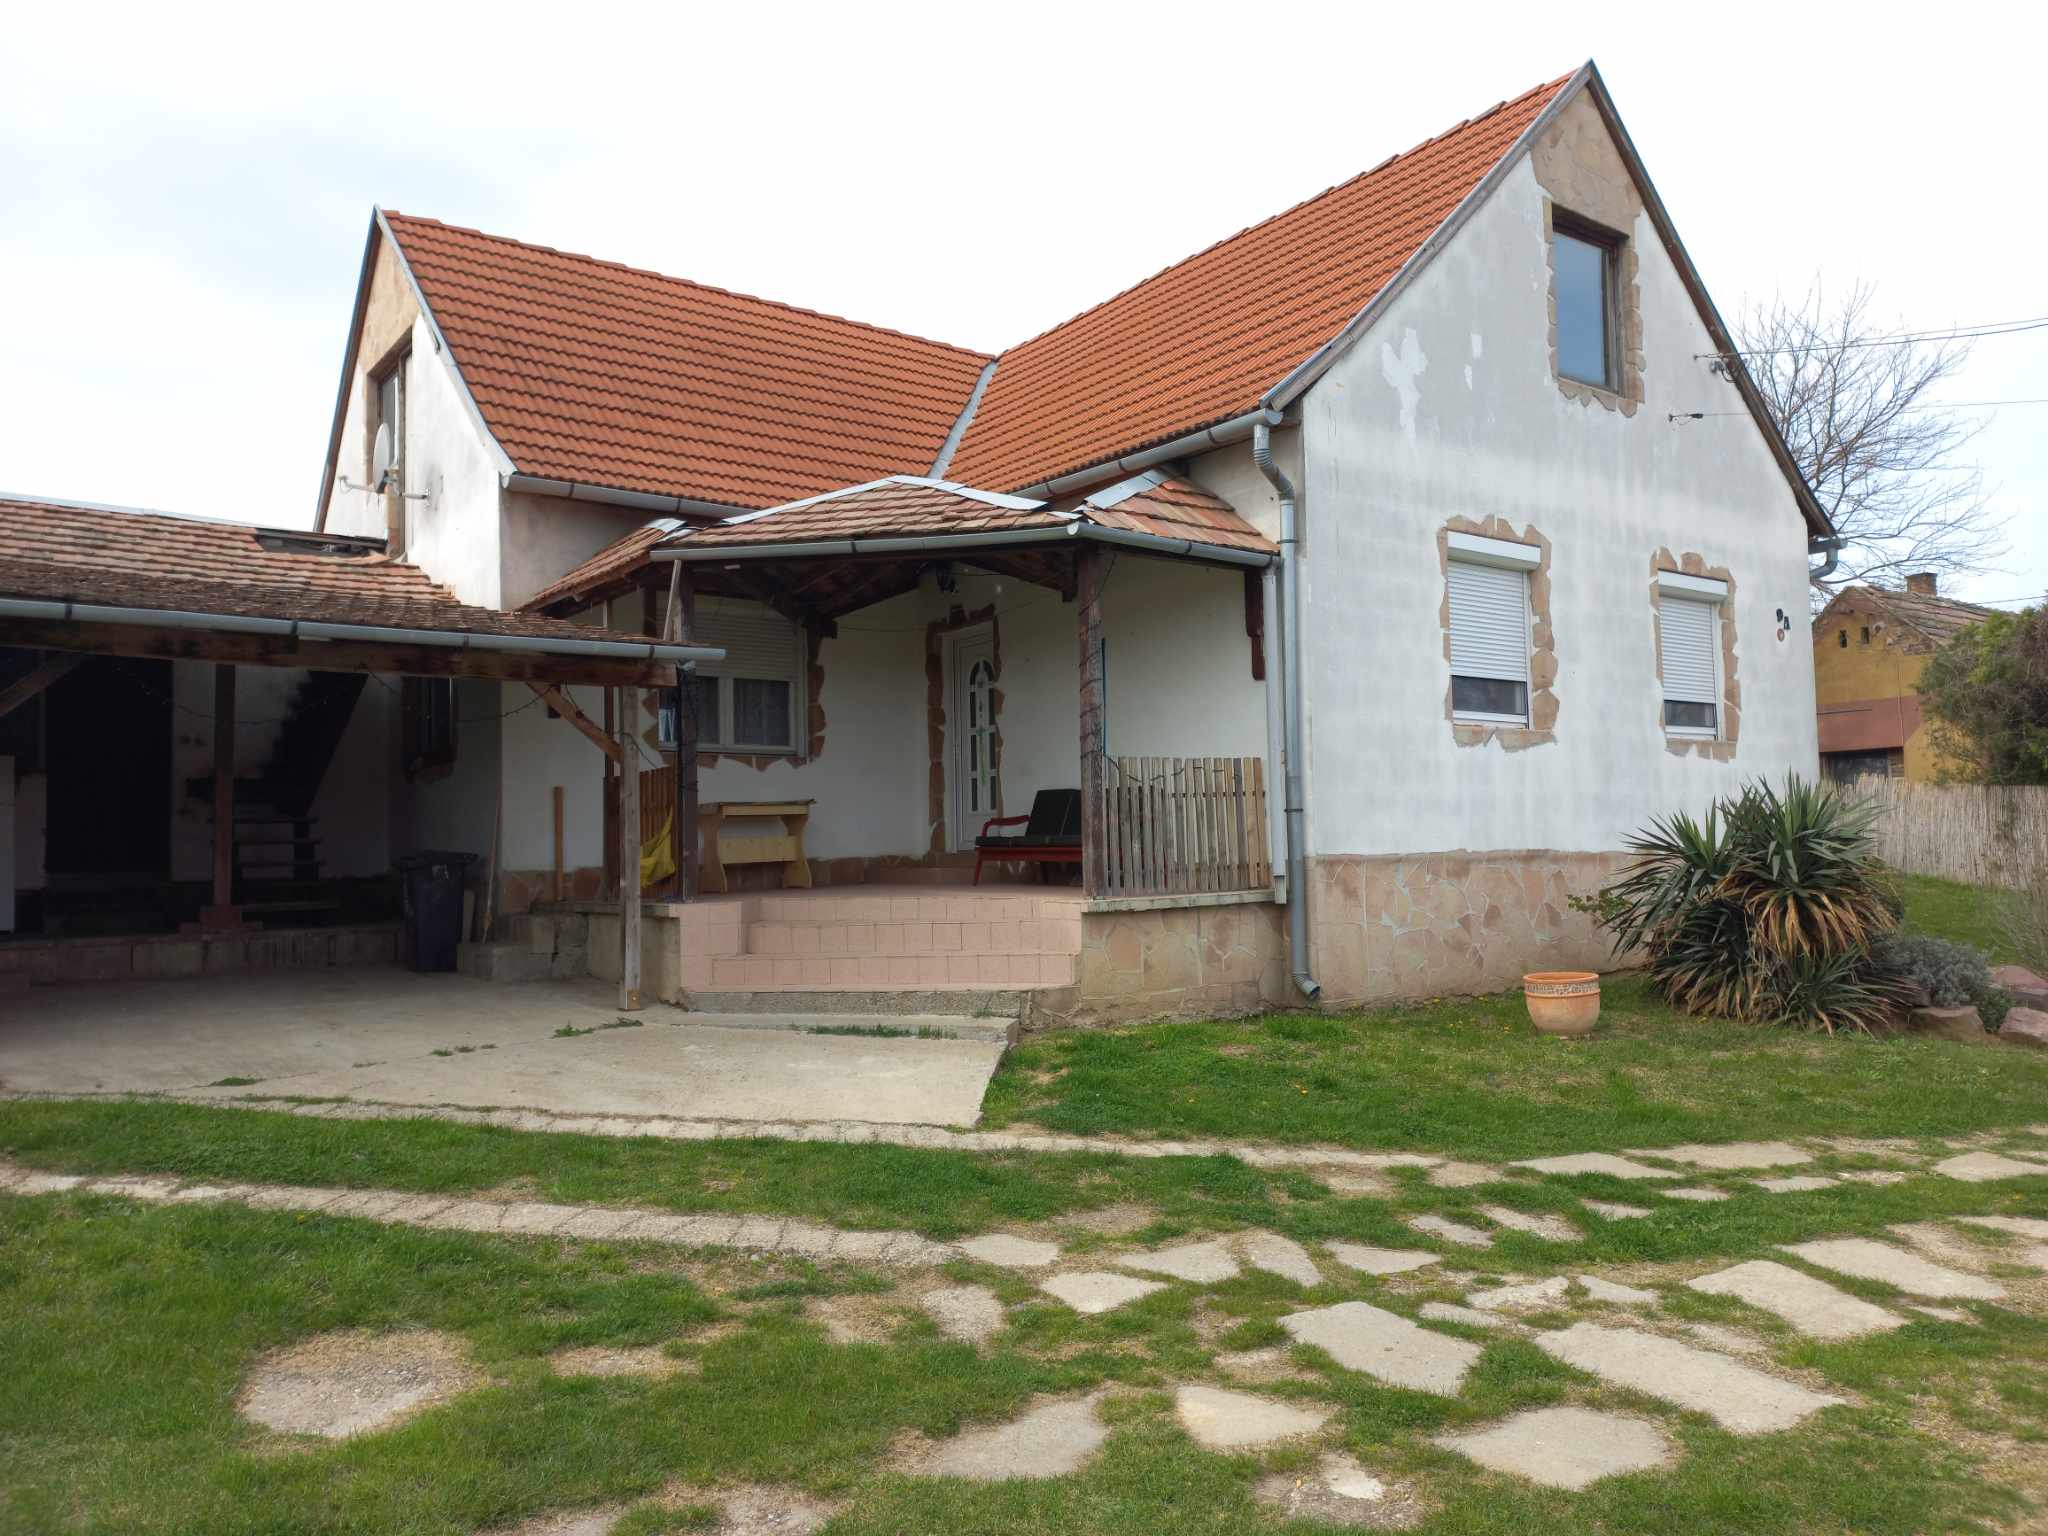 Csertő, recent gebouwd huis, 21 jaar oud in goede staat #1495